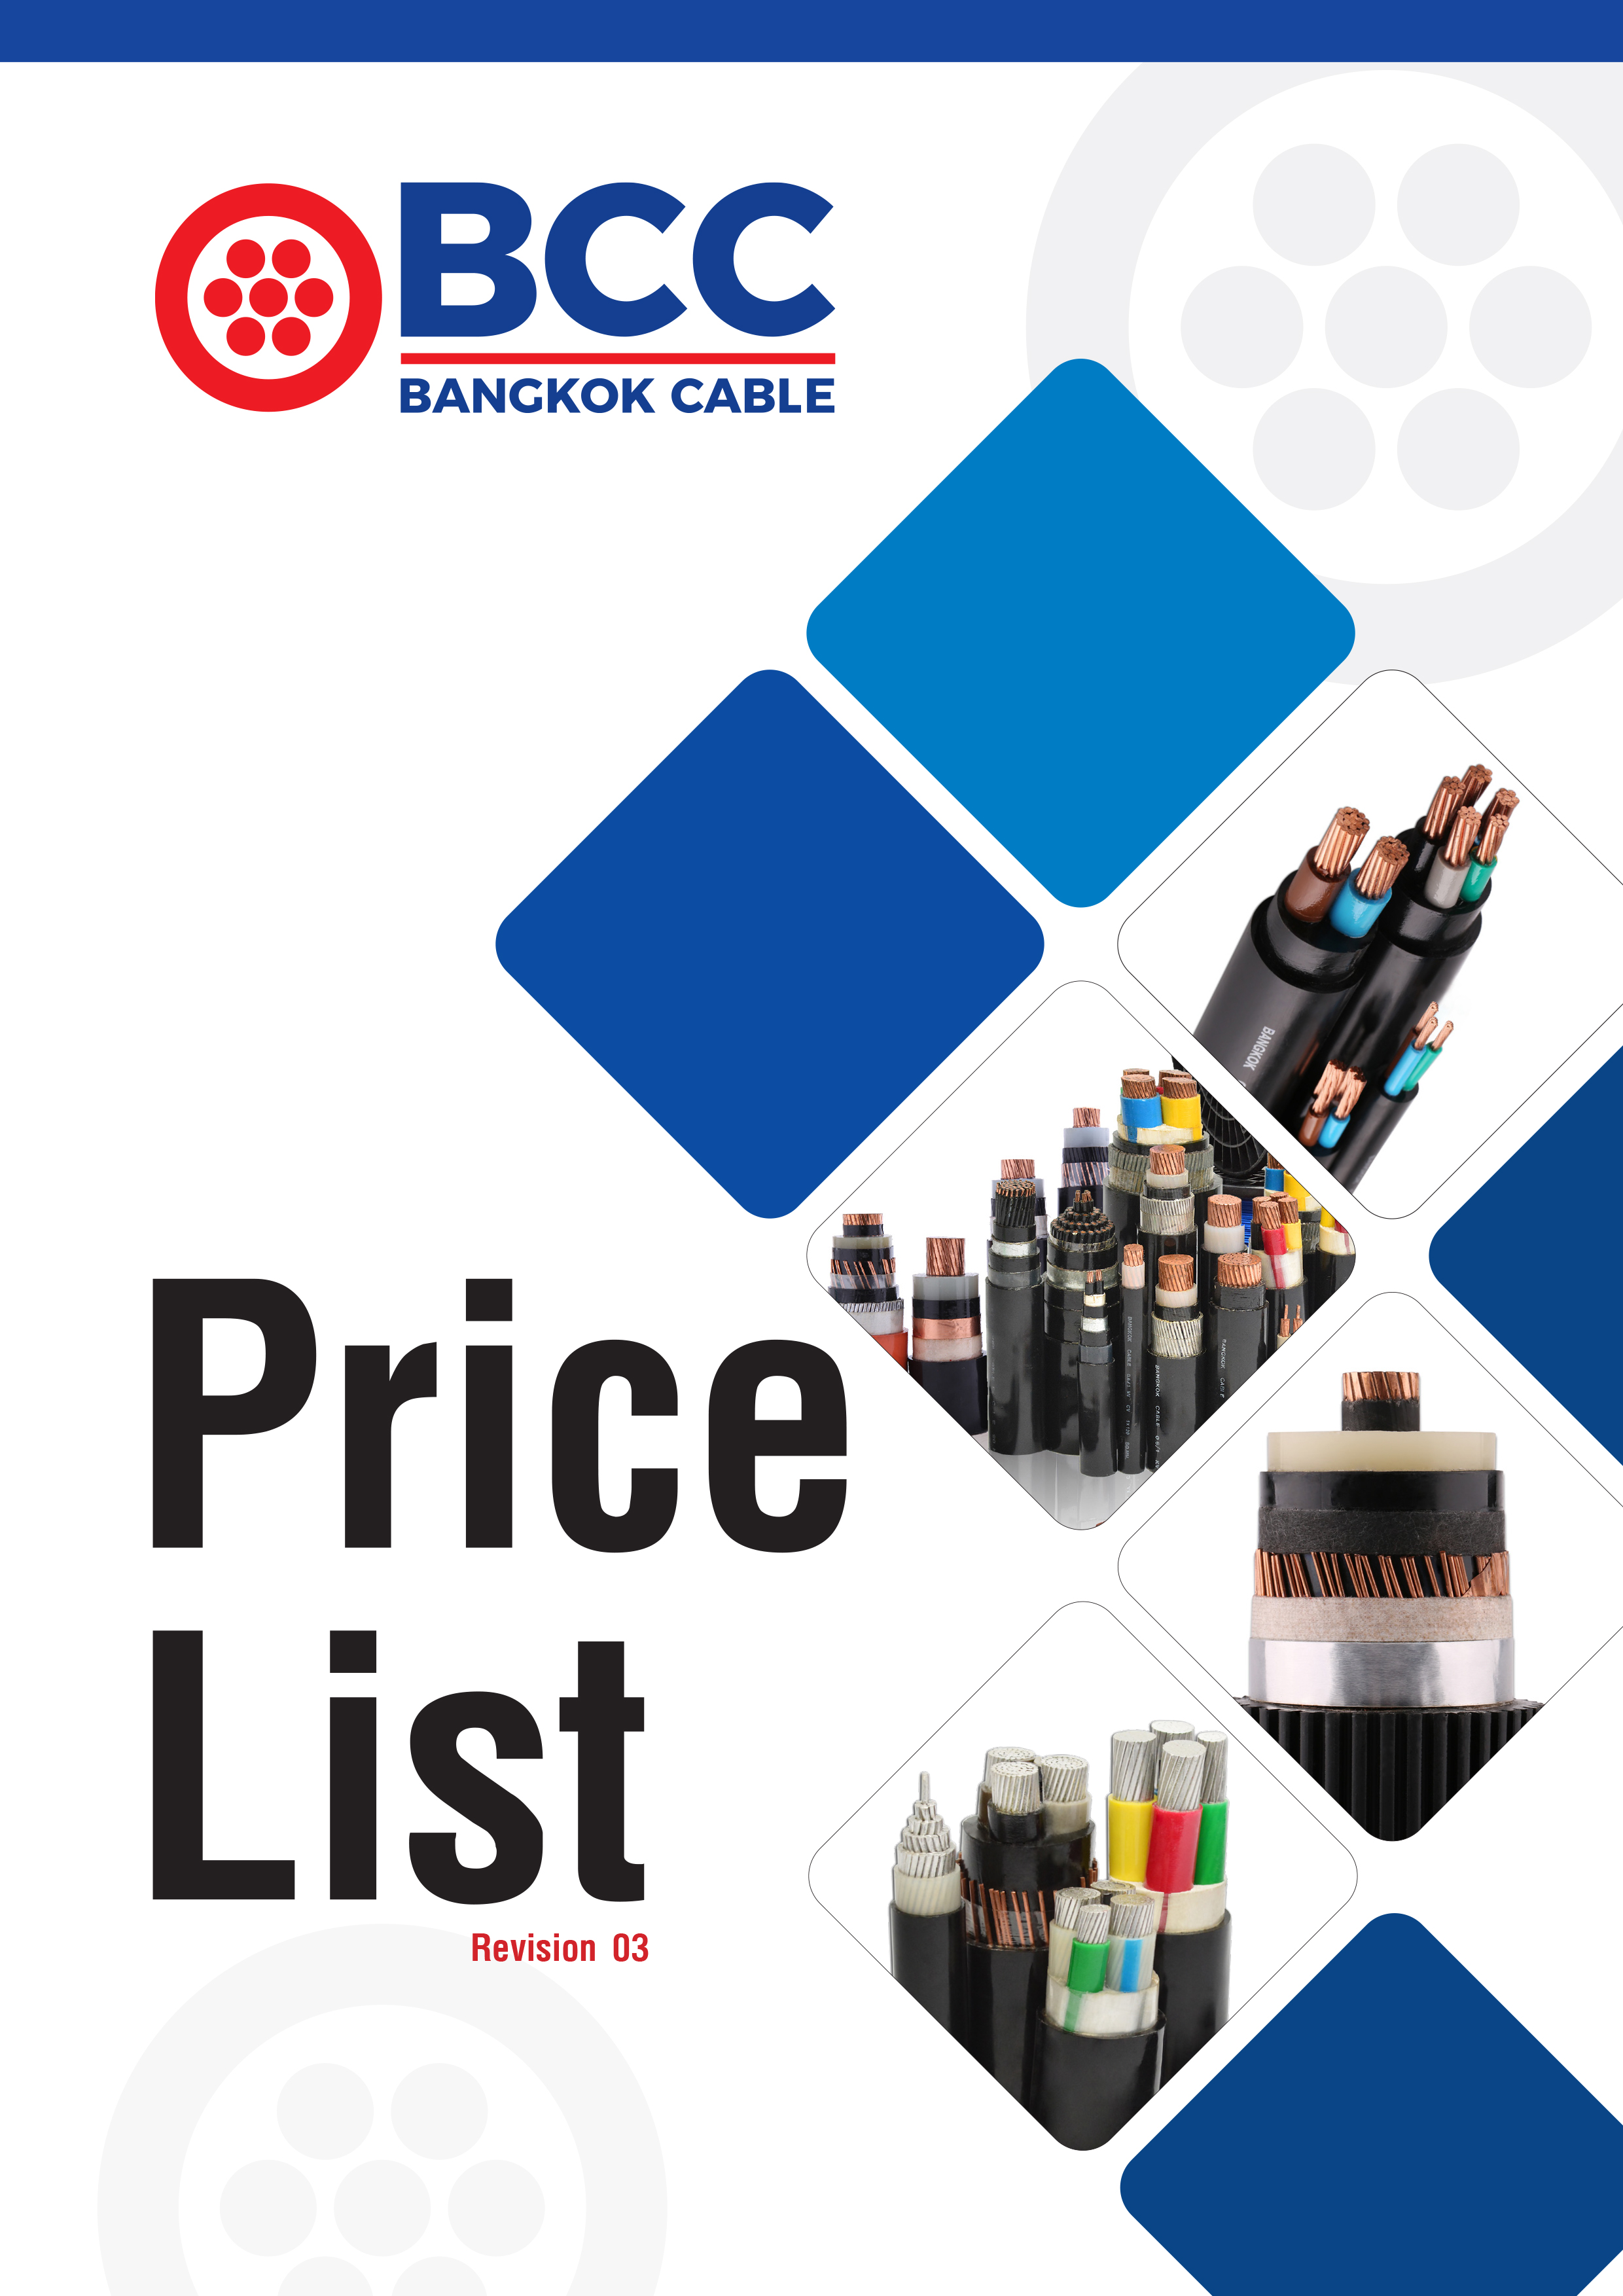 BCC Bangkok Cable